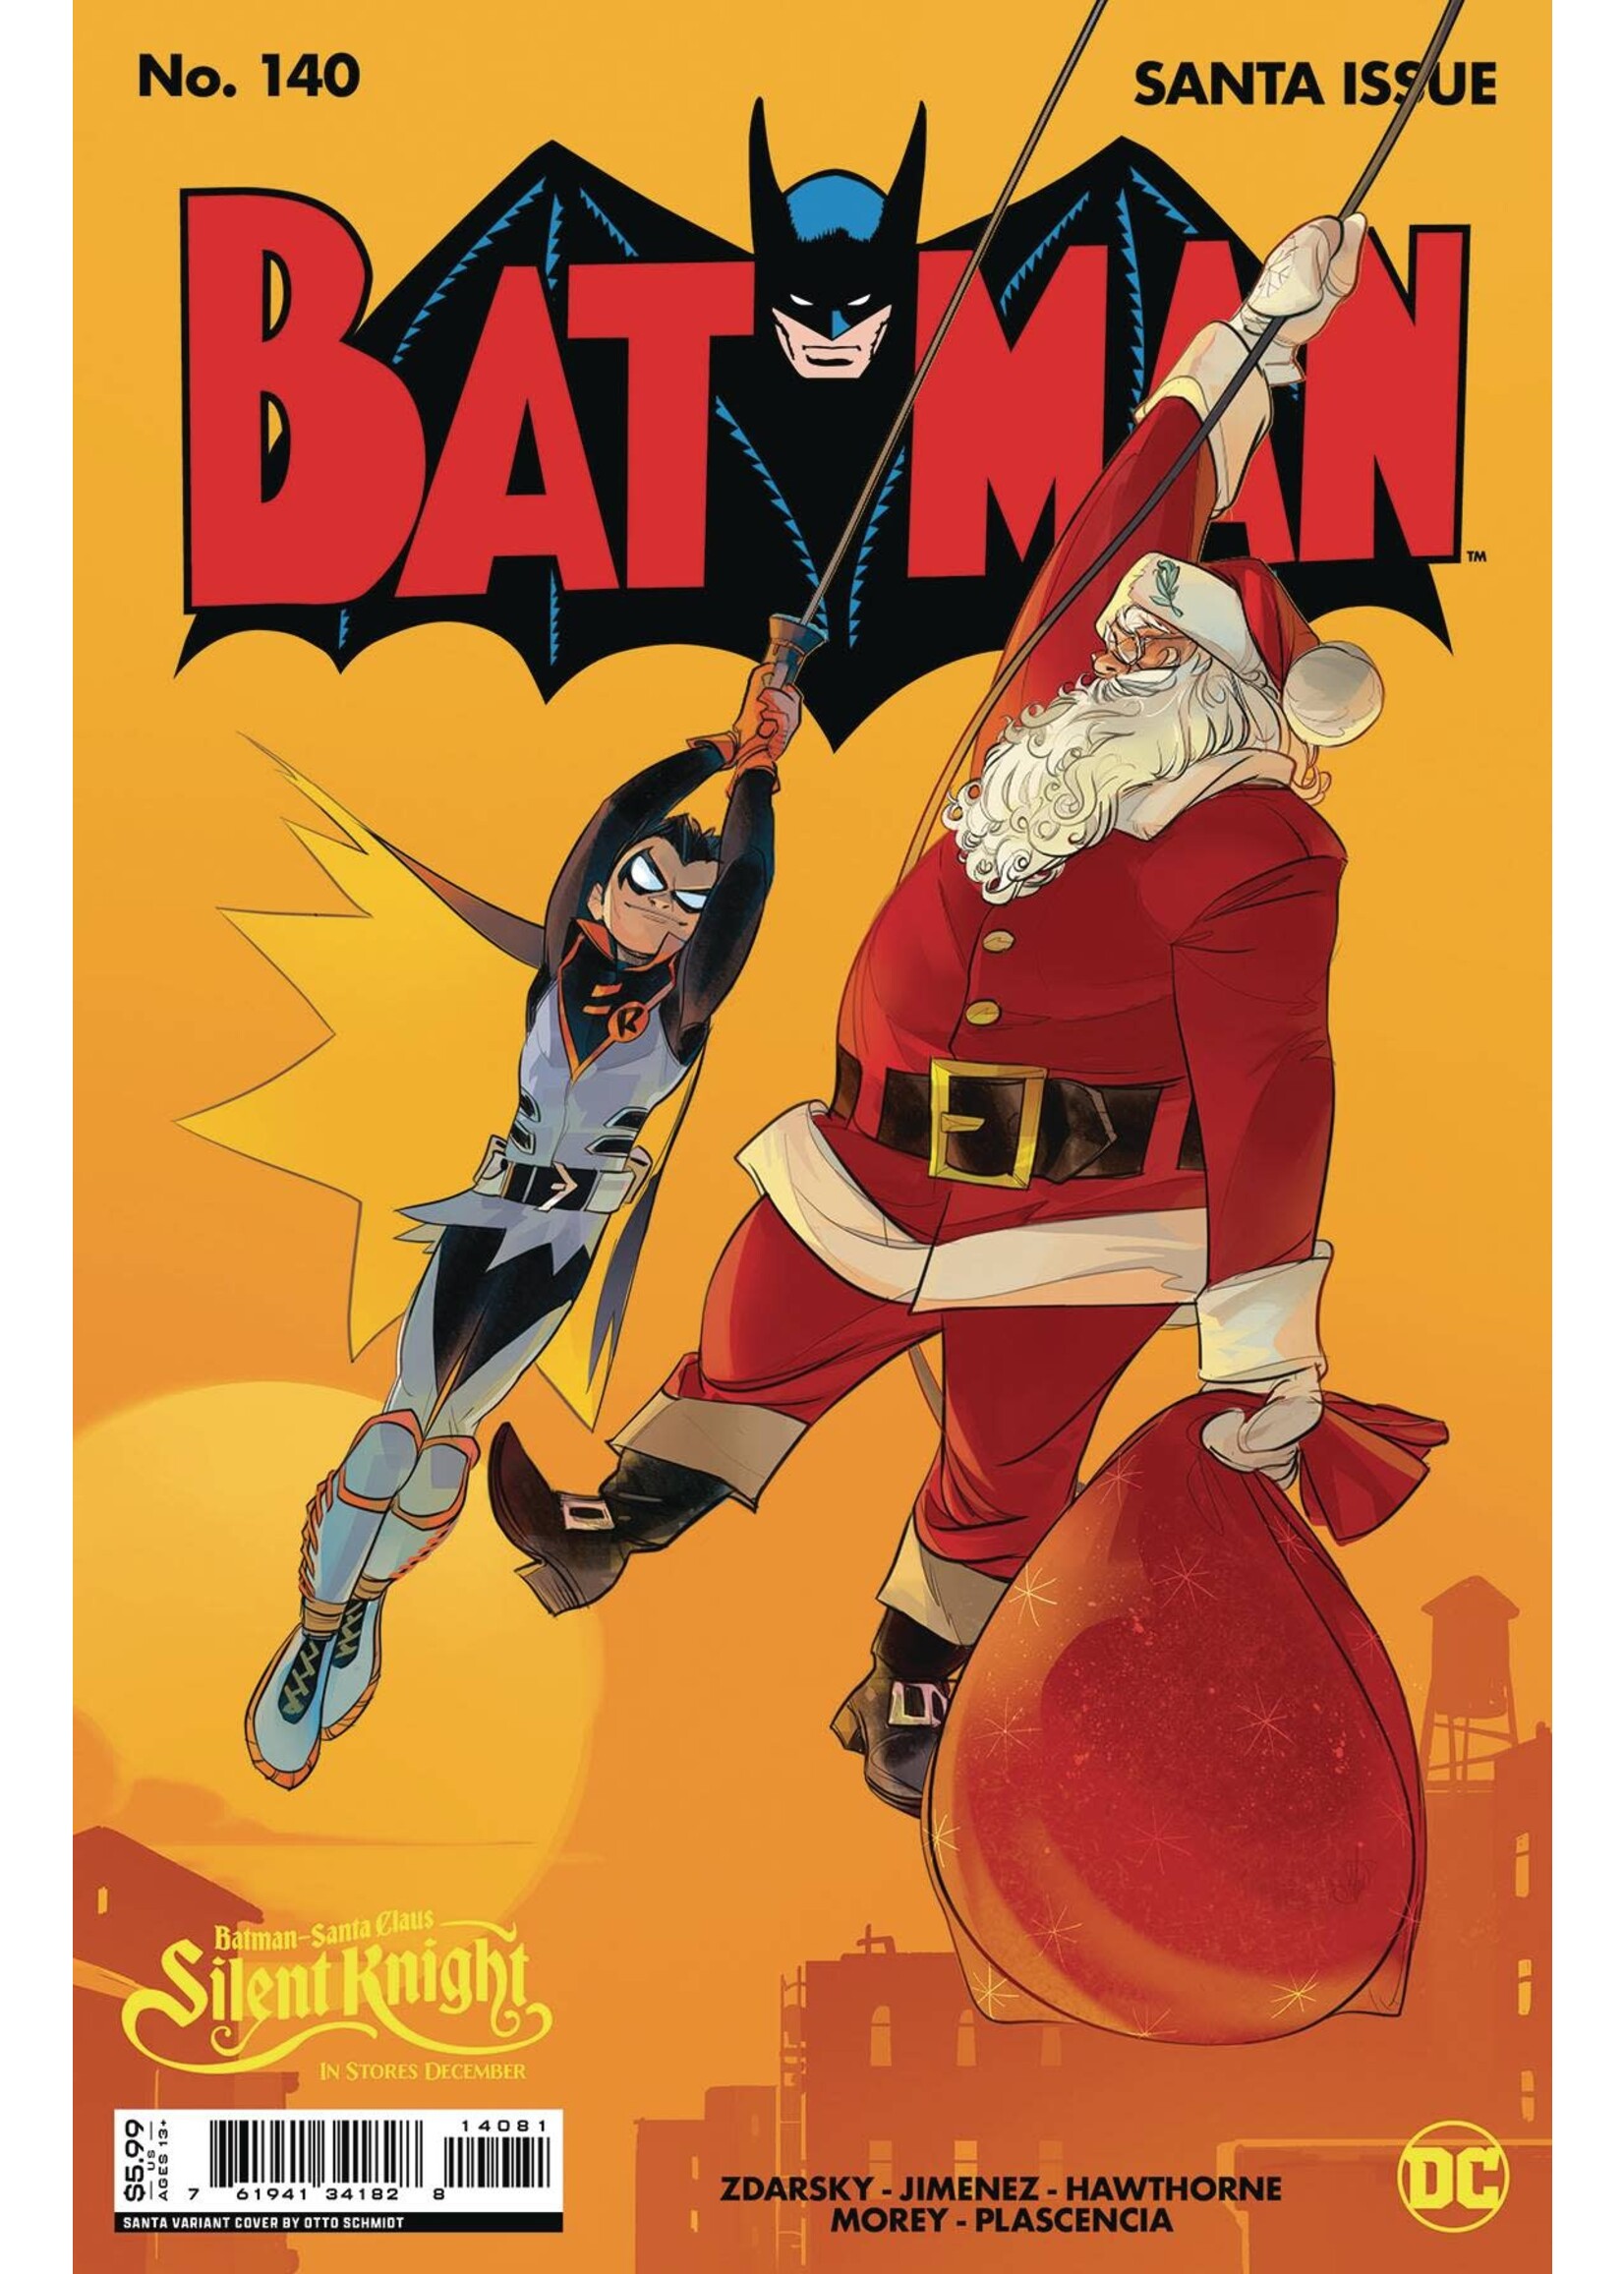 DC COMICS BATMAN #140 SANTA